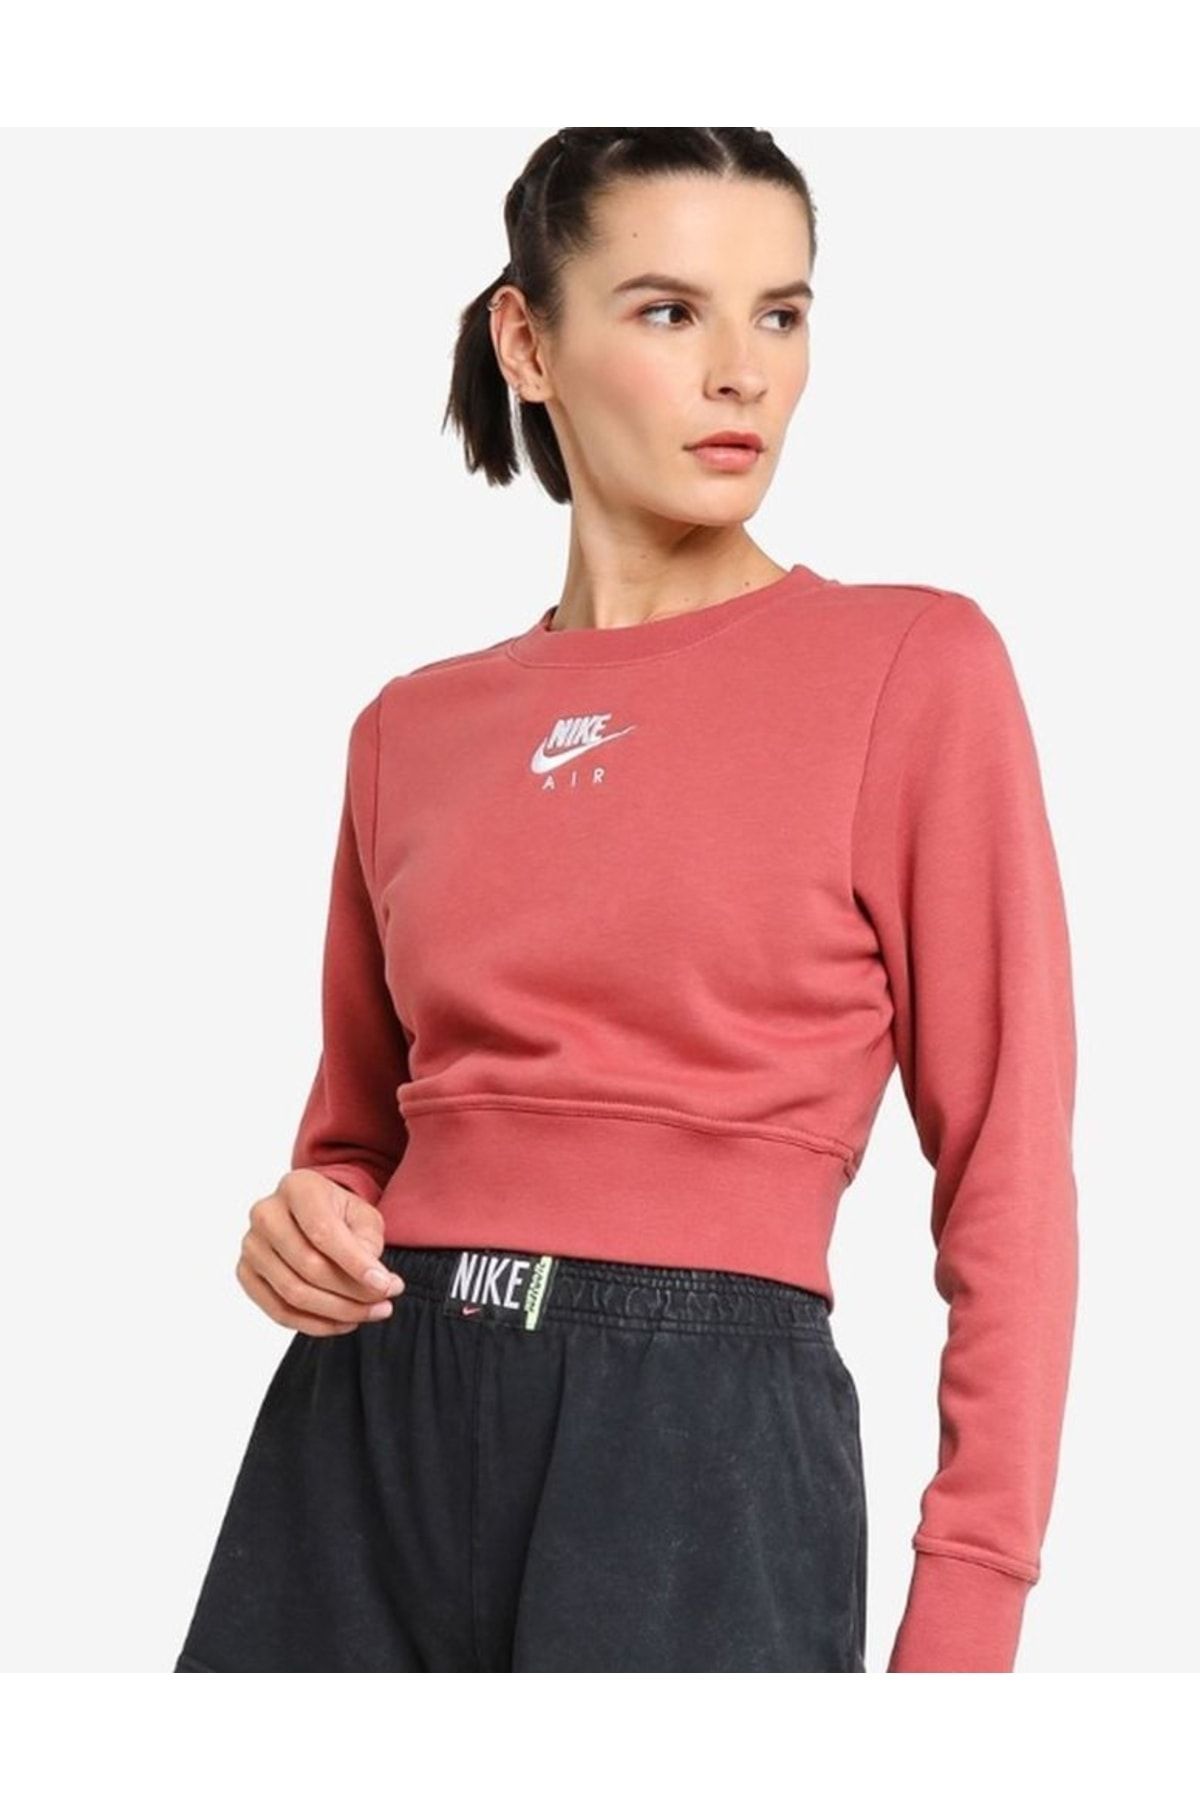 Nike Women's Air Fleece Crew Sweatshirt-dq2895-691